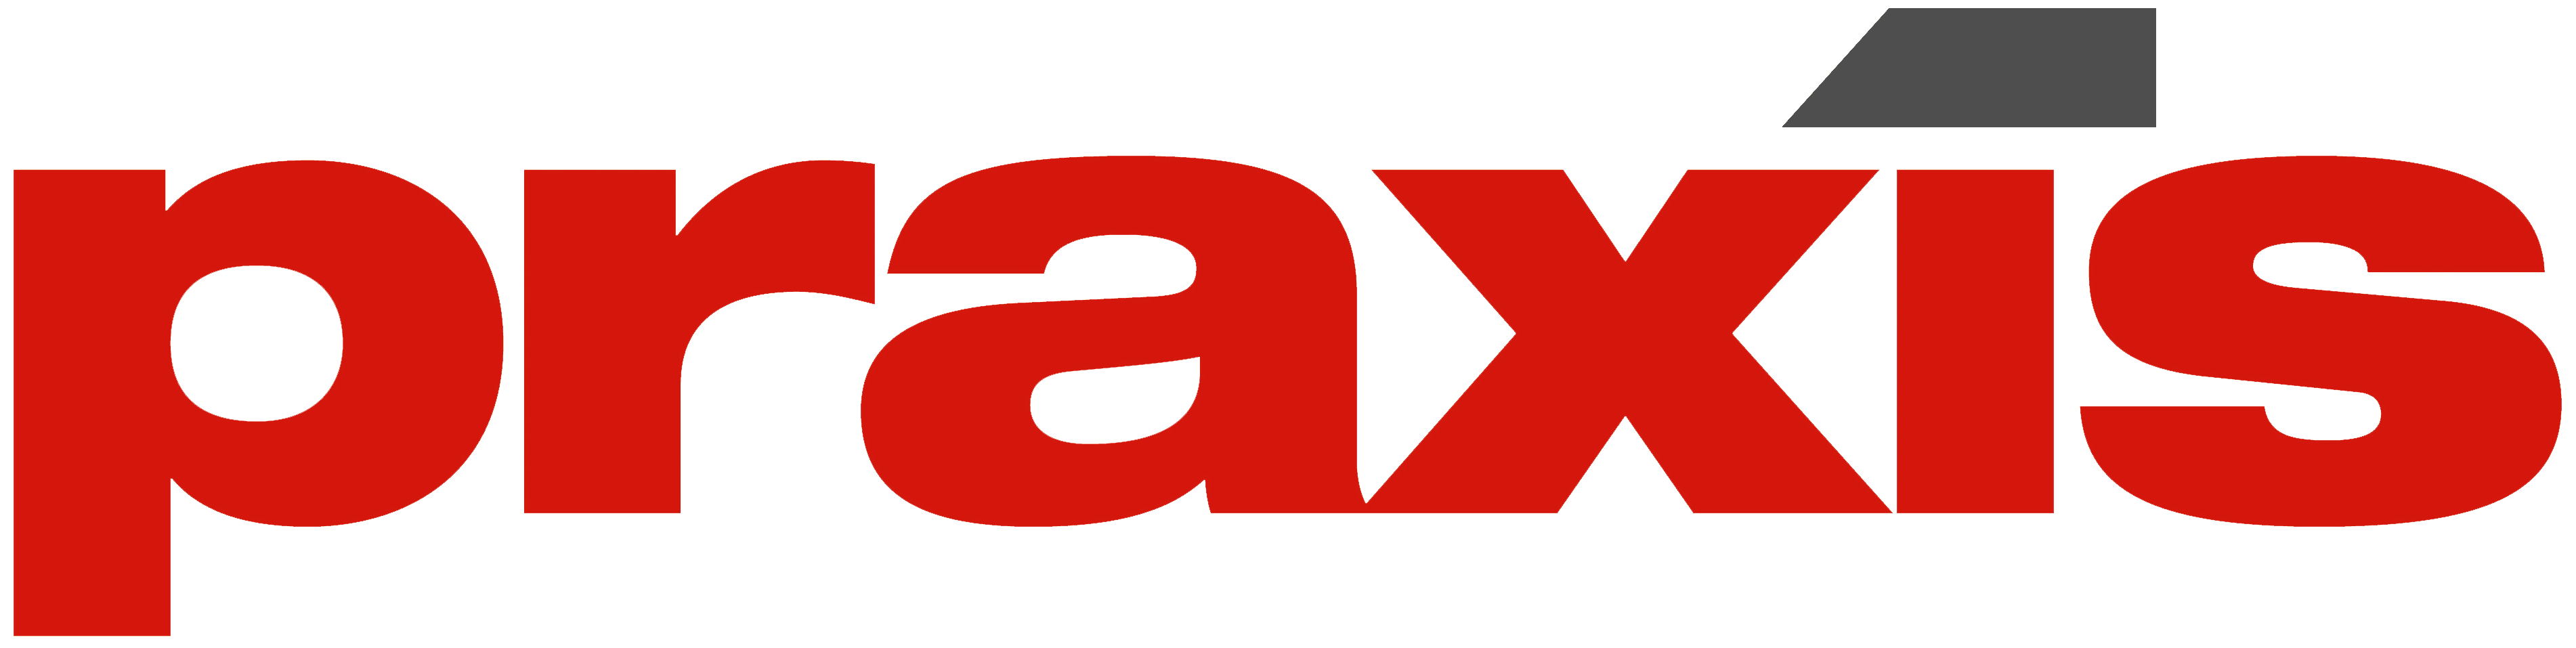 Praxis Logo - Praxis Logo CMYK Cropped 100 0 0 0 0kopie - DVO/Accountor